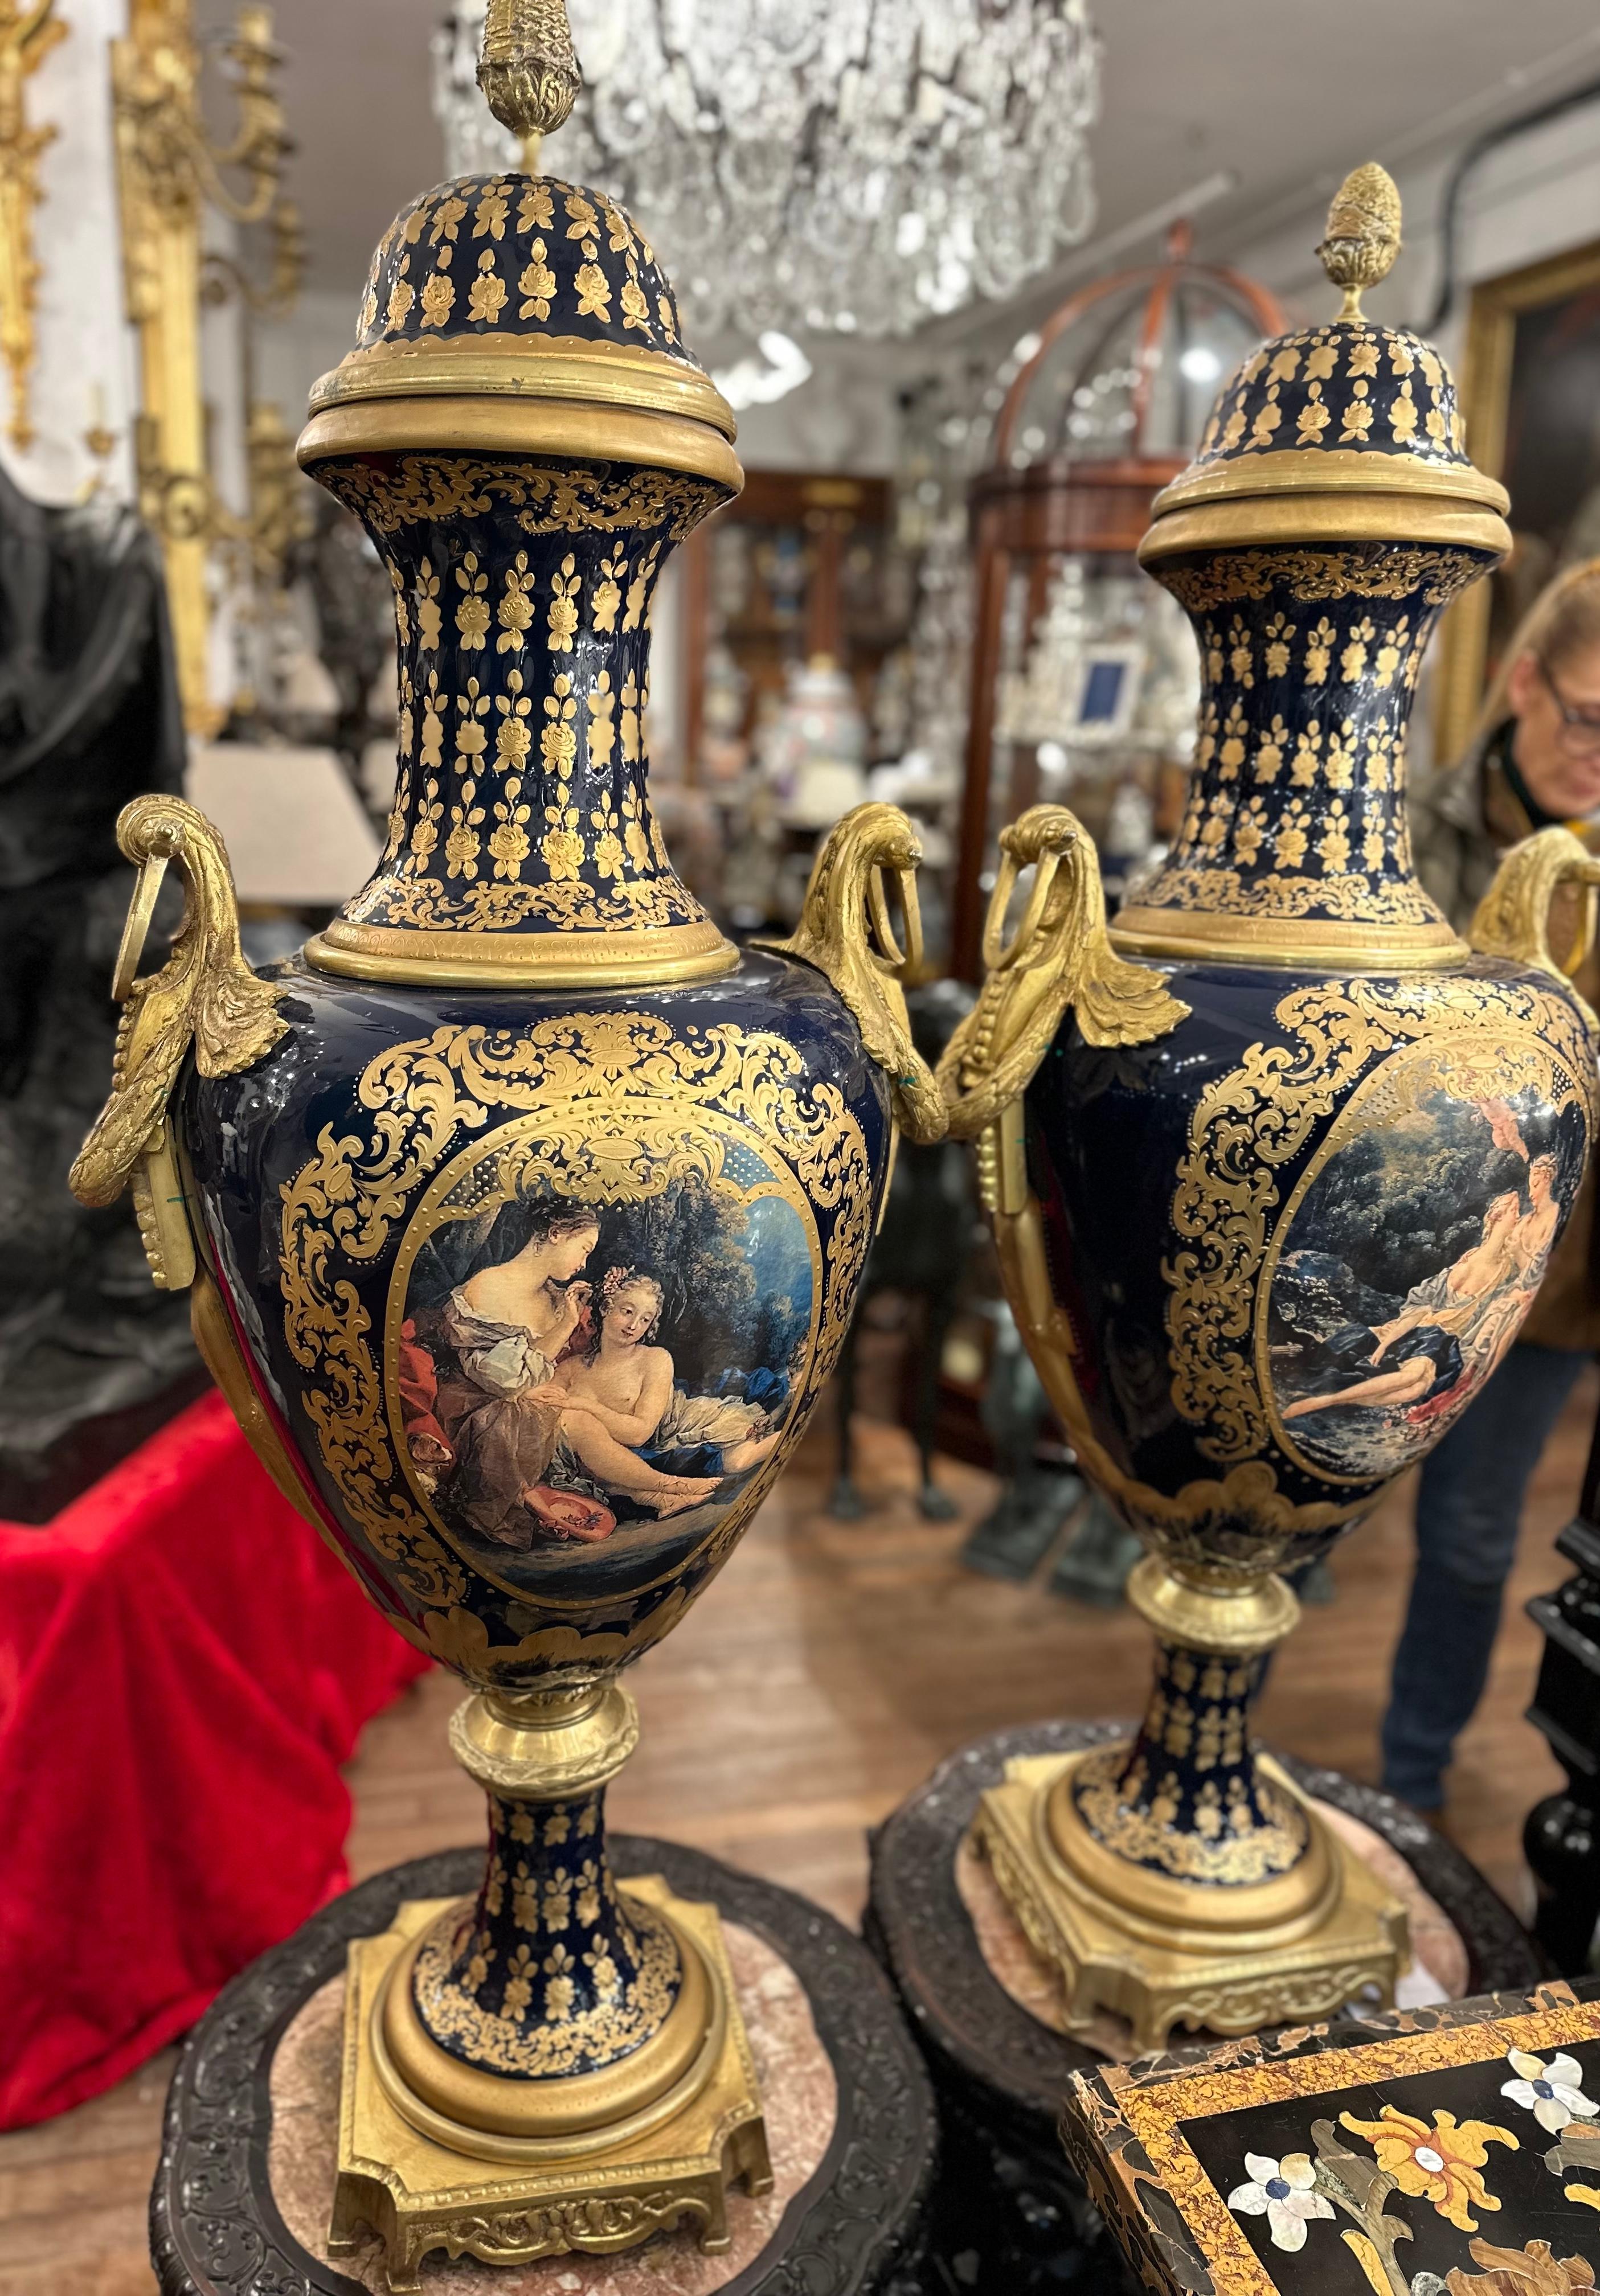 Ein äußerst dekoratives Paar Vasen im Stil von Sèvres in Blau und Gold. Aufwändig und detailreich von Hand gemalt, zeigt es liegende Figuren in einer Landschaft. Idyllisch und klassisch ist das Gemälde der Szene mit frischen Farben und